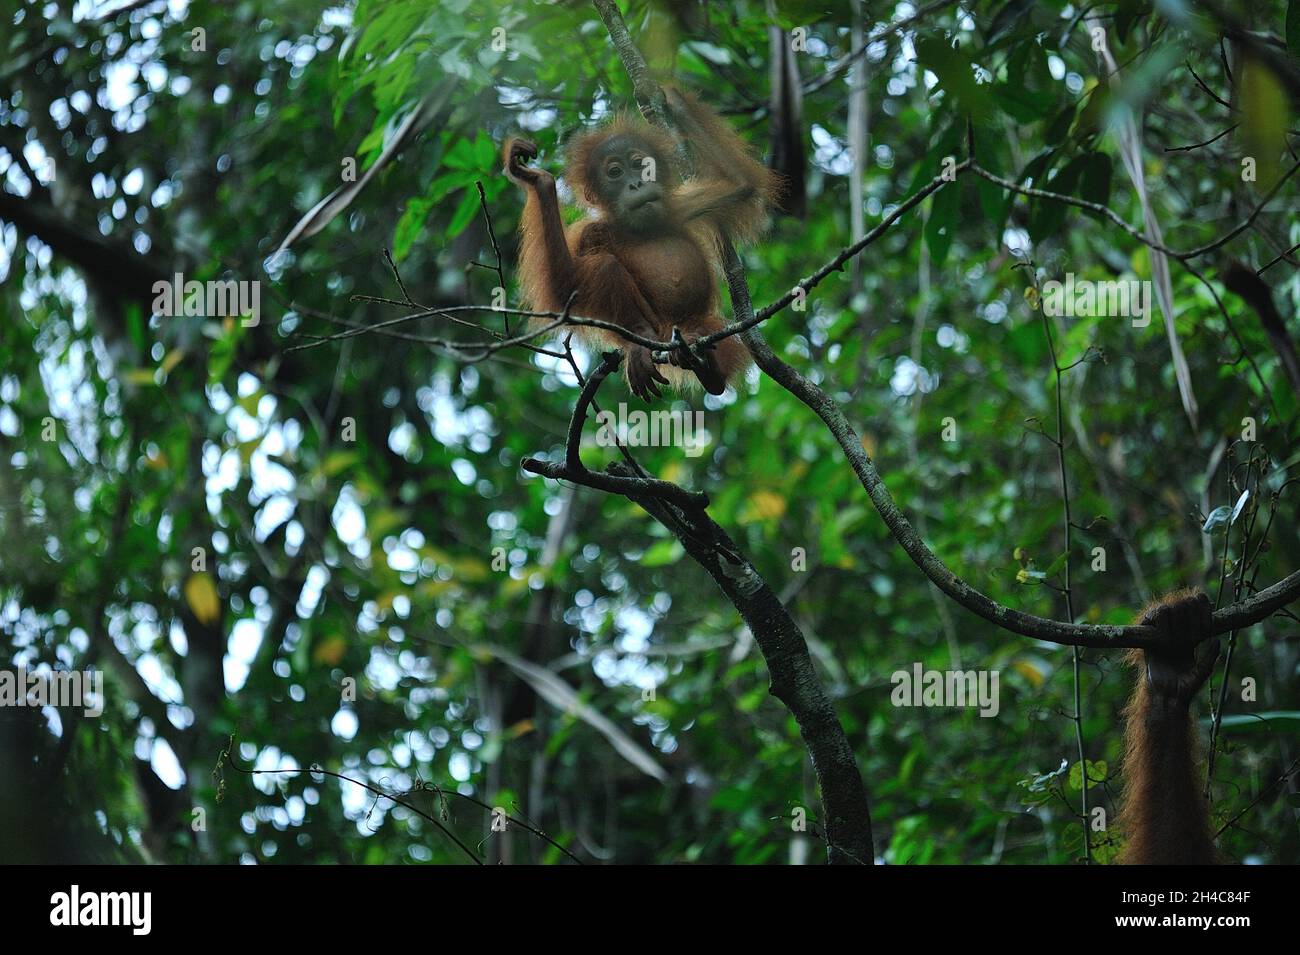 Attività selvatiche dell'orangutano Sumatran (Pongo abelii) viste all'interno della zona cuscinetto del Parco Nazionale dei Leuser di Gunung a Sungai Landak, Bahorok, Sumatra settentrionale, Indonesia il 31 ottobre 2021. La nuova ricerca di un team internazionale di scienziati, guidata dalla Washington University School of Medicine di St. Louis, ha decodificato, o sequenziato, il DNA di un orangutano Sumatran che dimostra che gli orangutani Sumatran e Bornean divergono circa 400,000 anni fa. Le stime precedenti avevano messo la divisione a circa 1 milione di anni fa. Oggi, solo circa 50,000 orangutani borneani e 7,000 Sumatran vivono ancora nella natura selvaggia. Connes Foto Stock